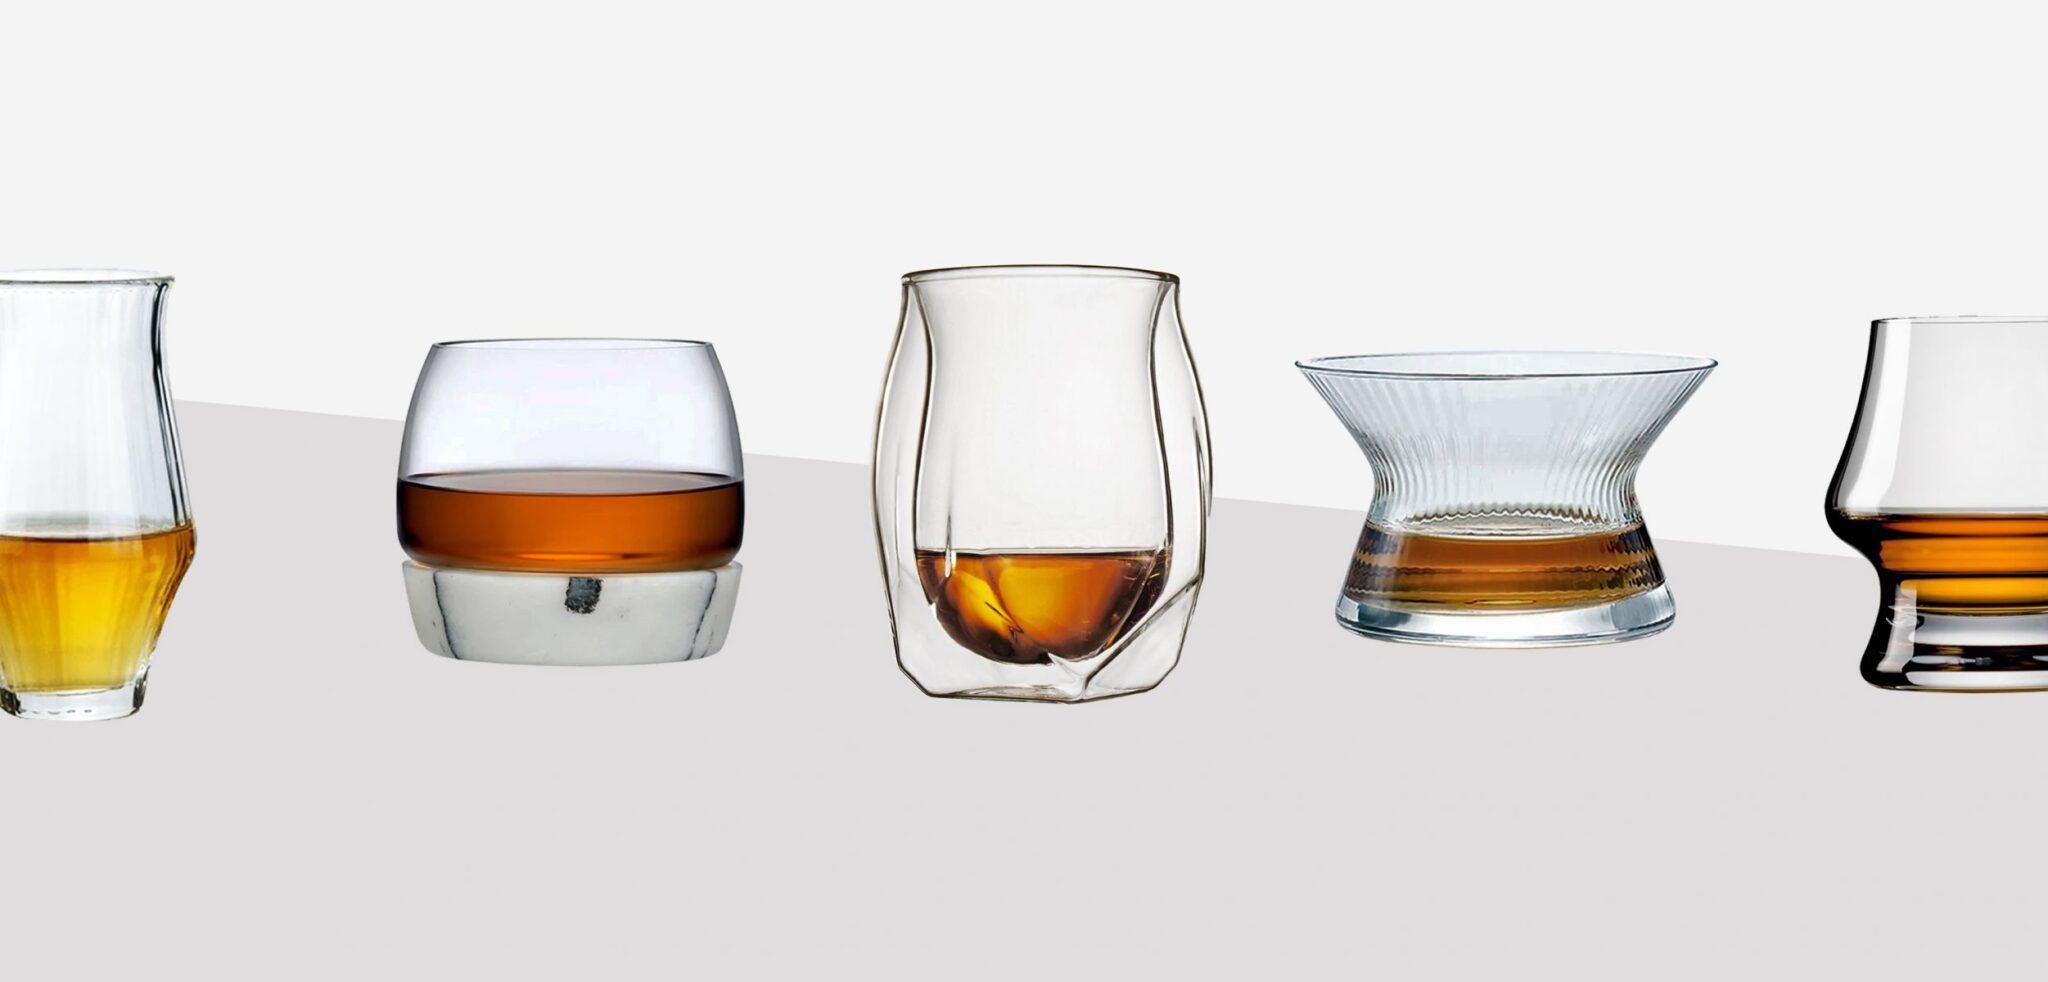 borbón Vaso para beber whisky escocés Copas grandes de vidrio de cristal sin plomo de 10 oz. whisky irlandés coñac 